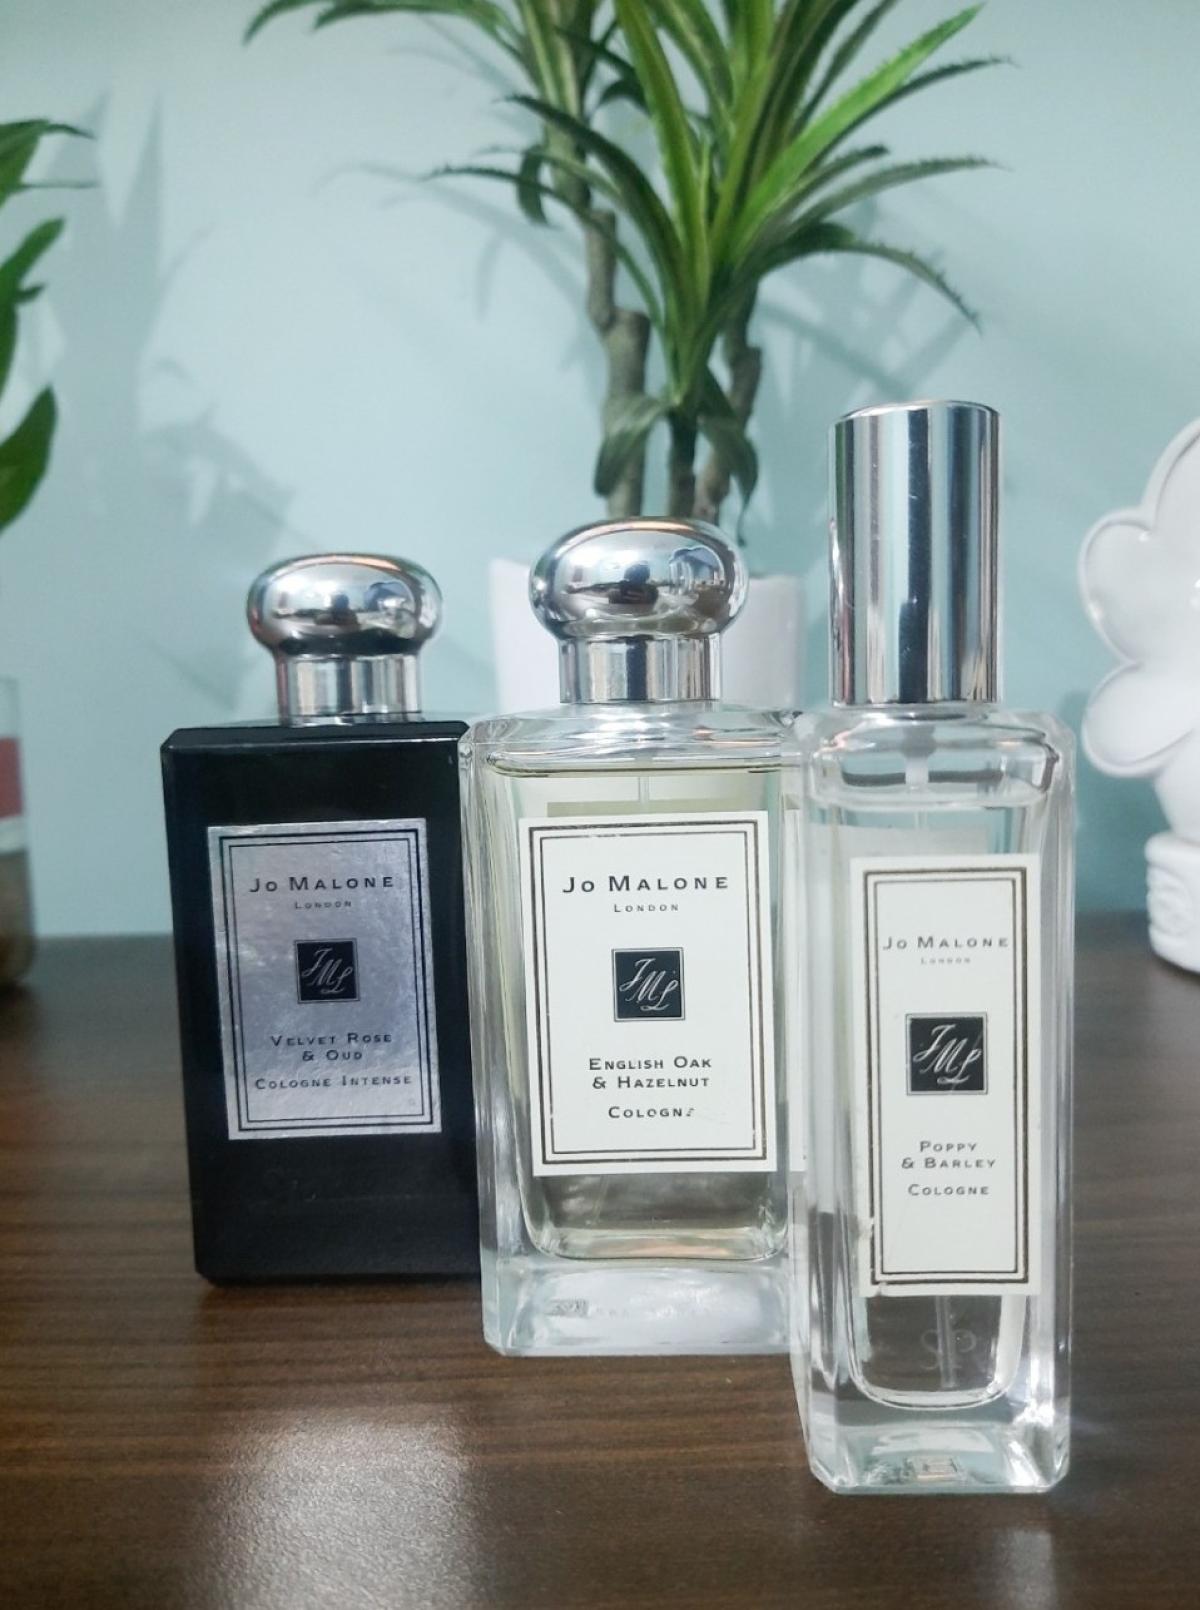 English Oak & Hazelnut Jo Malone London parfem - parfem za žene i ...